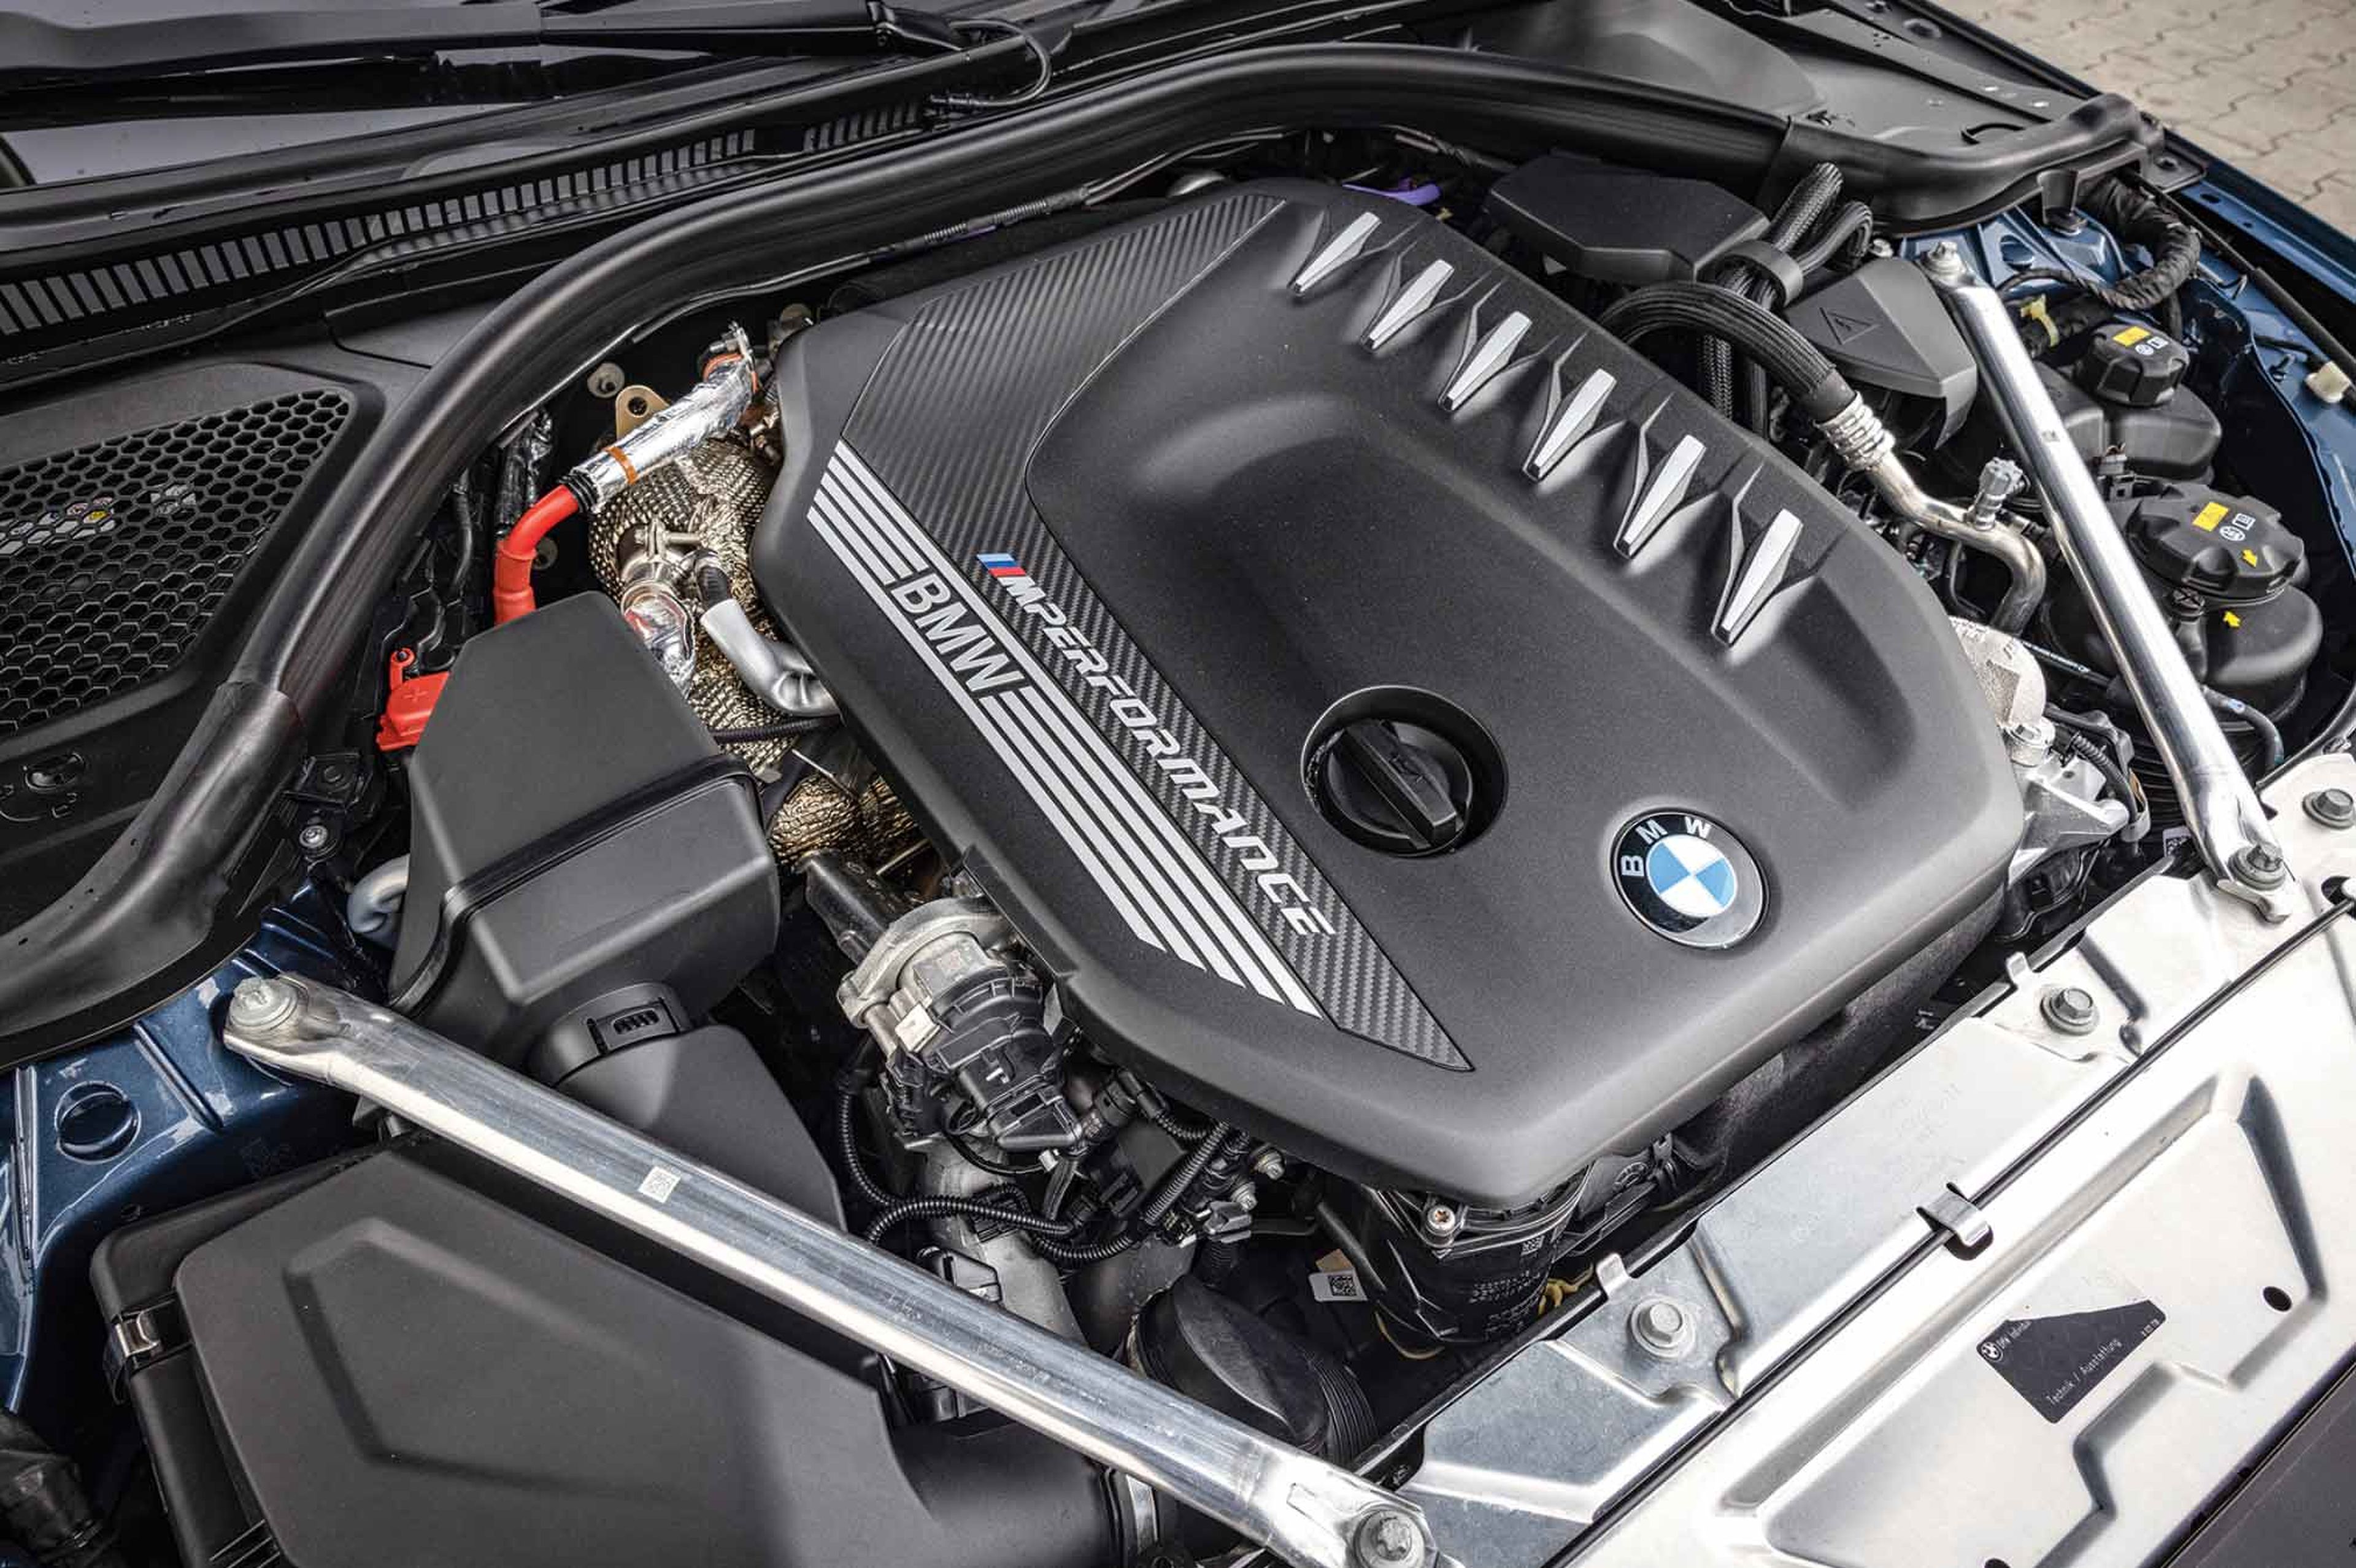 Diésel vs gasolina, BMW M44i vs M440d motor